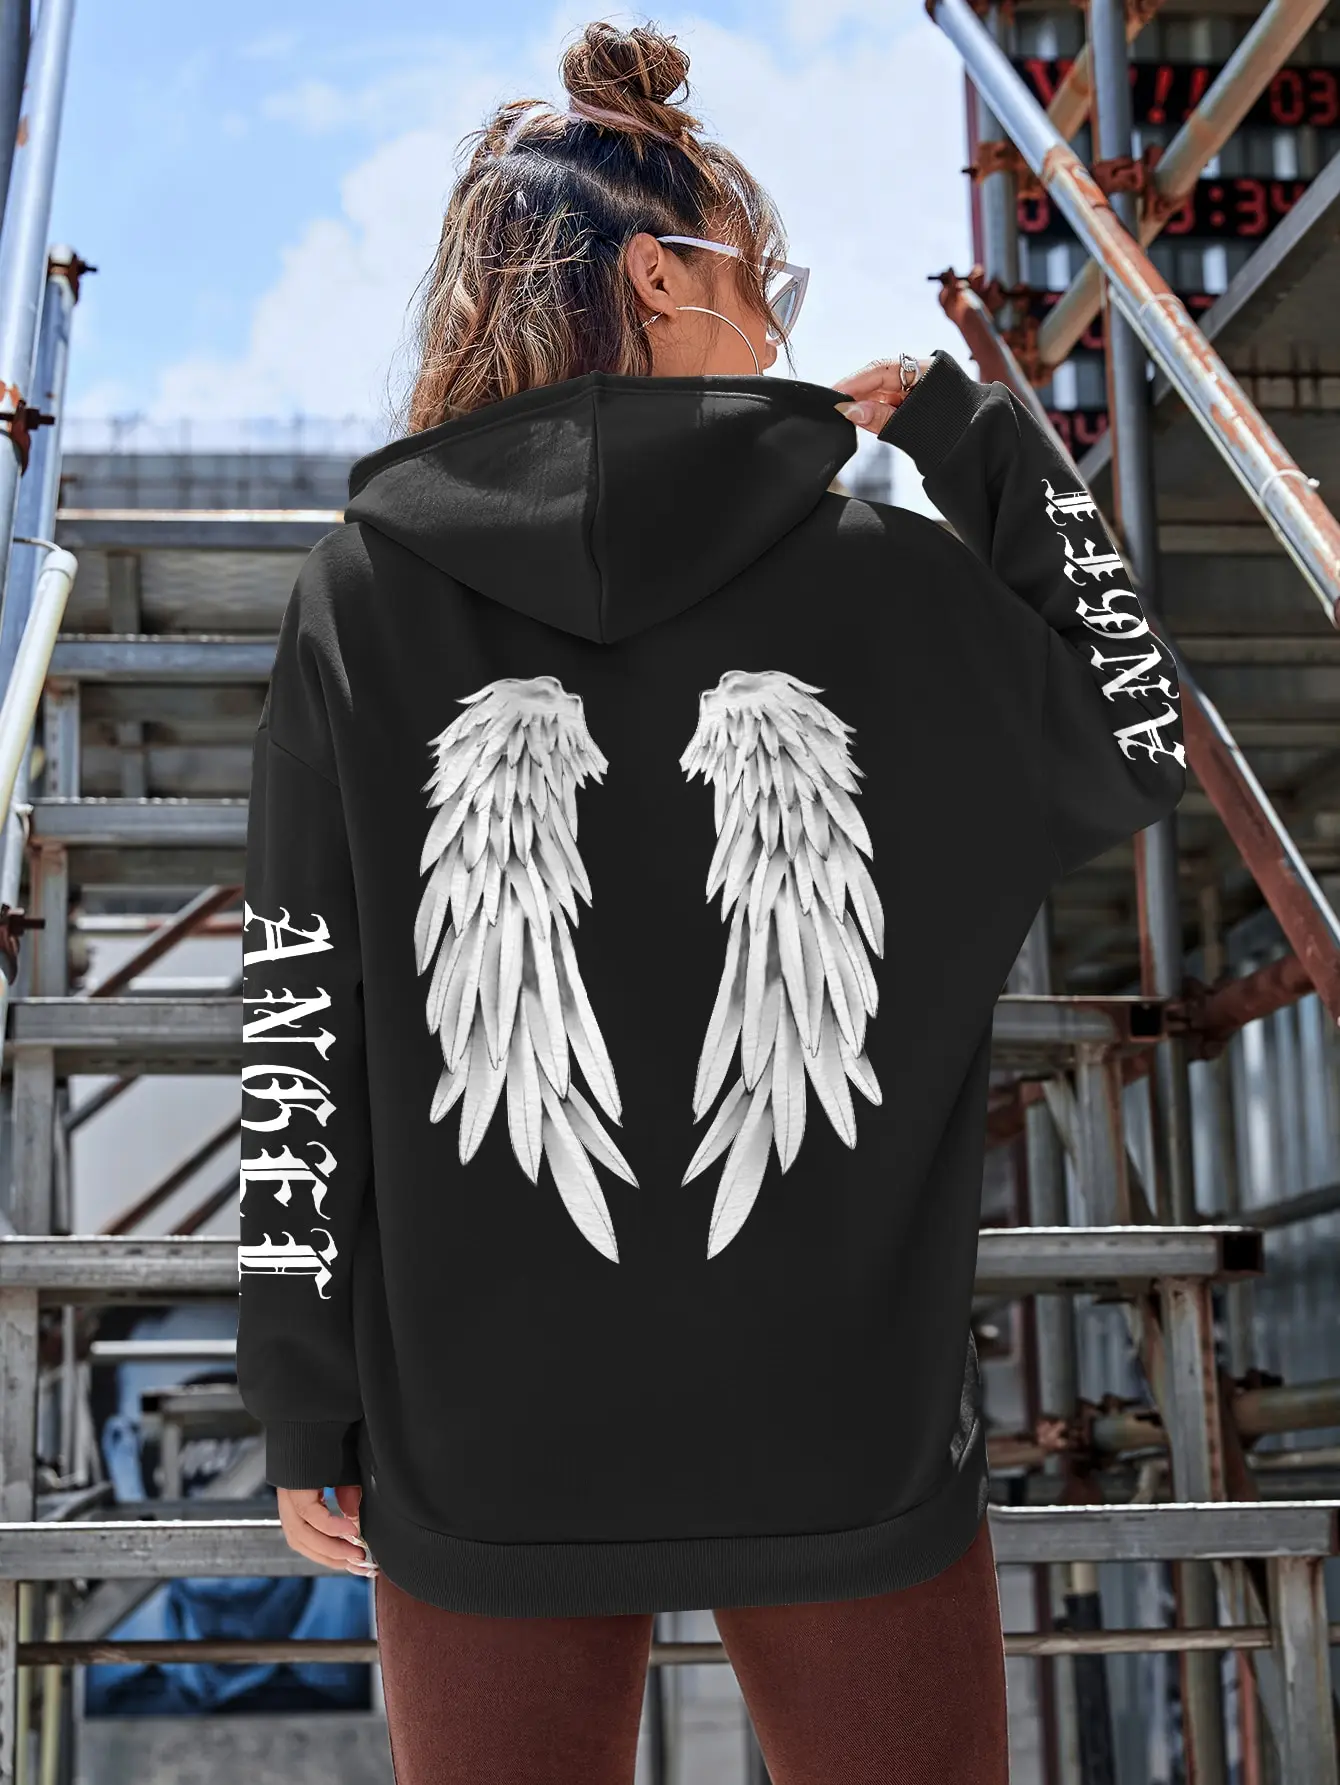 Angel Wings Hoodies: Fleece Pullovers for Women - true deals club